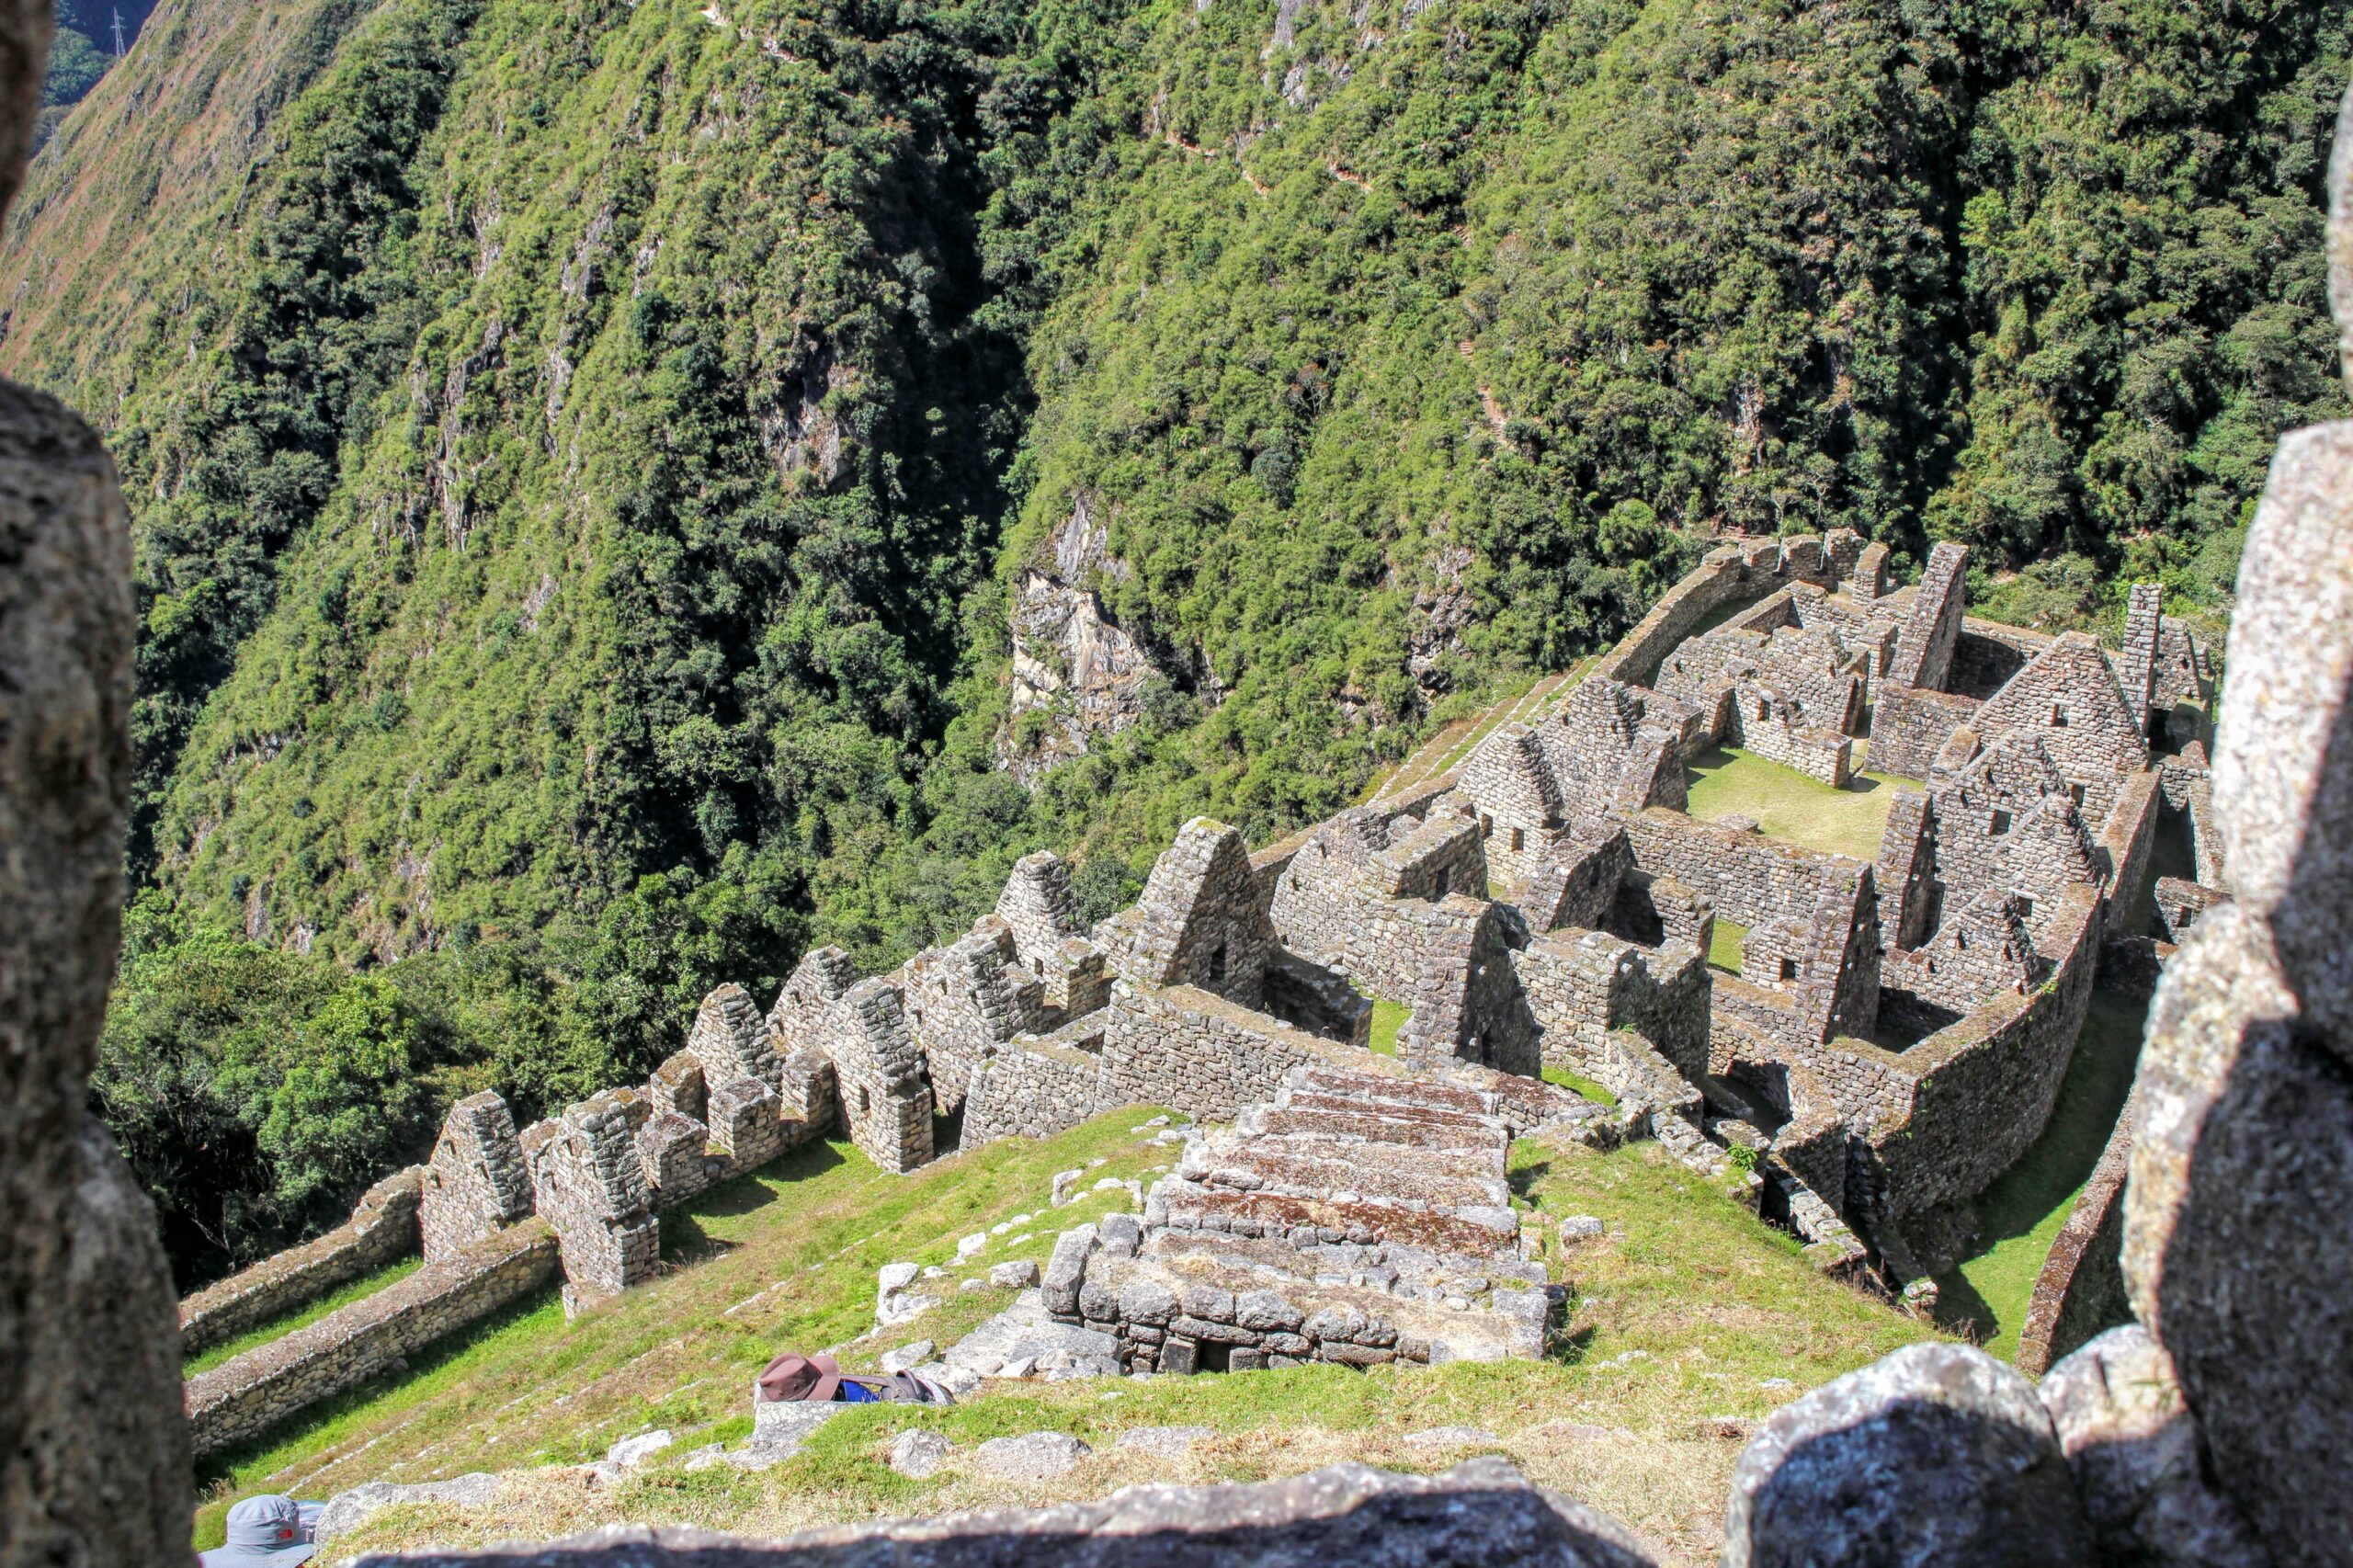 Peru 2016 – Day 4